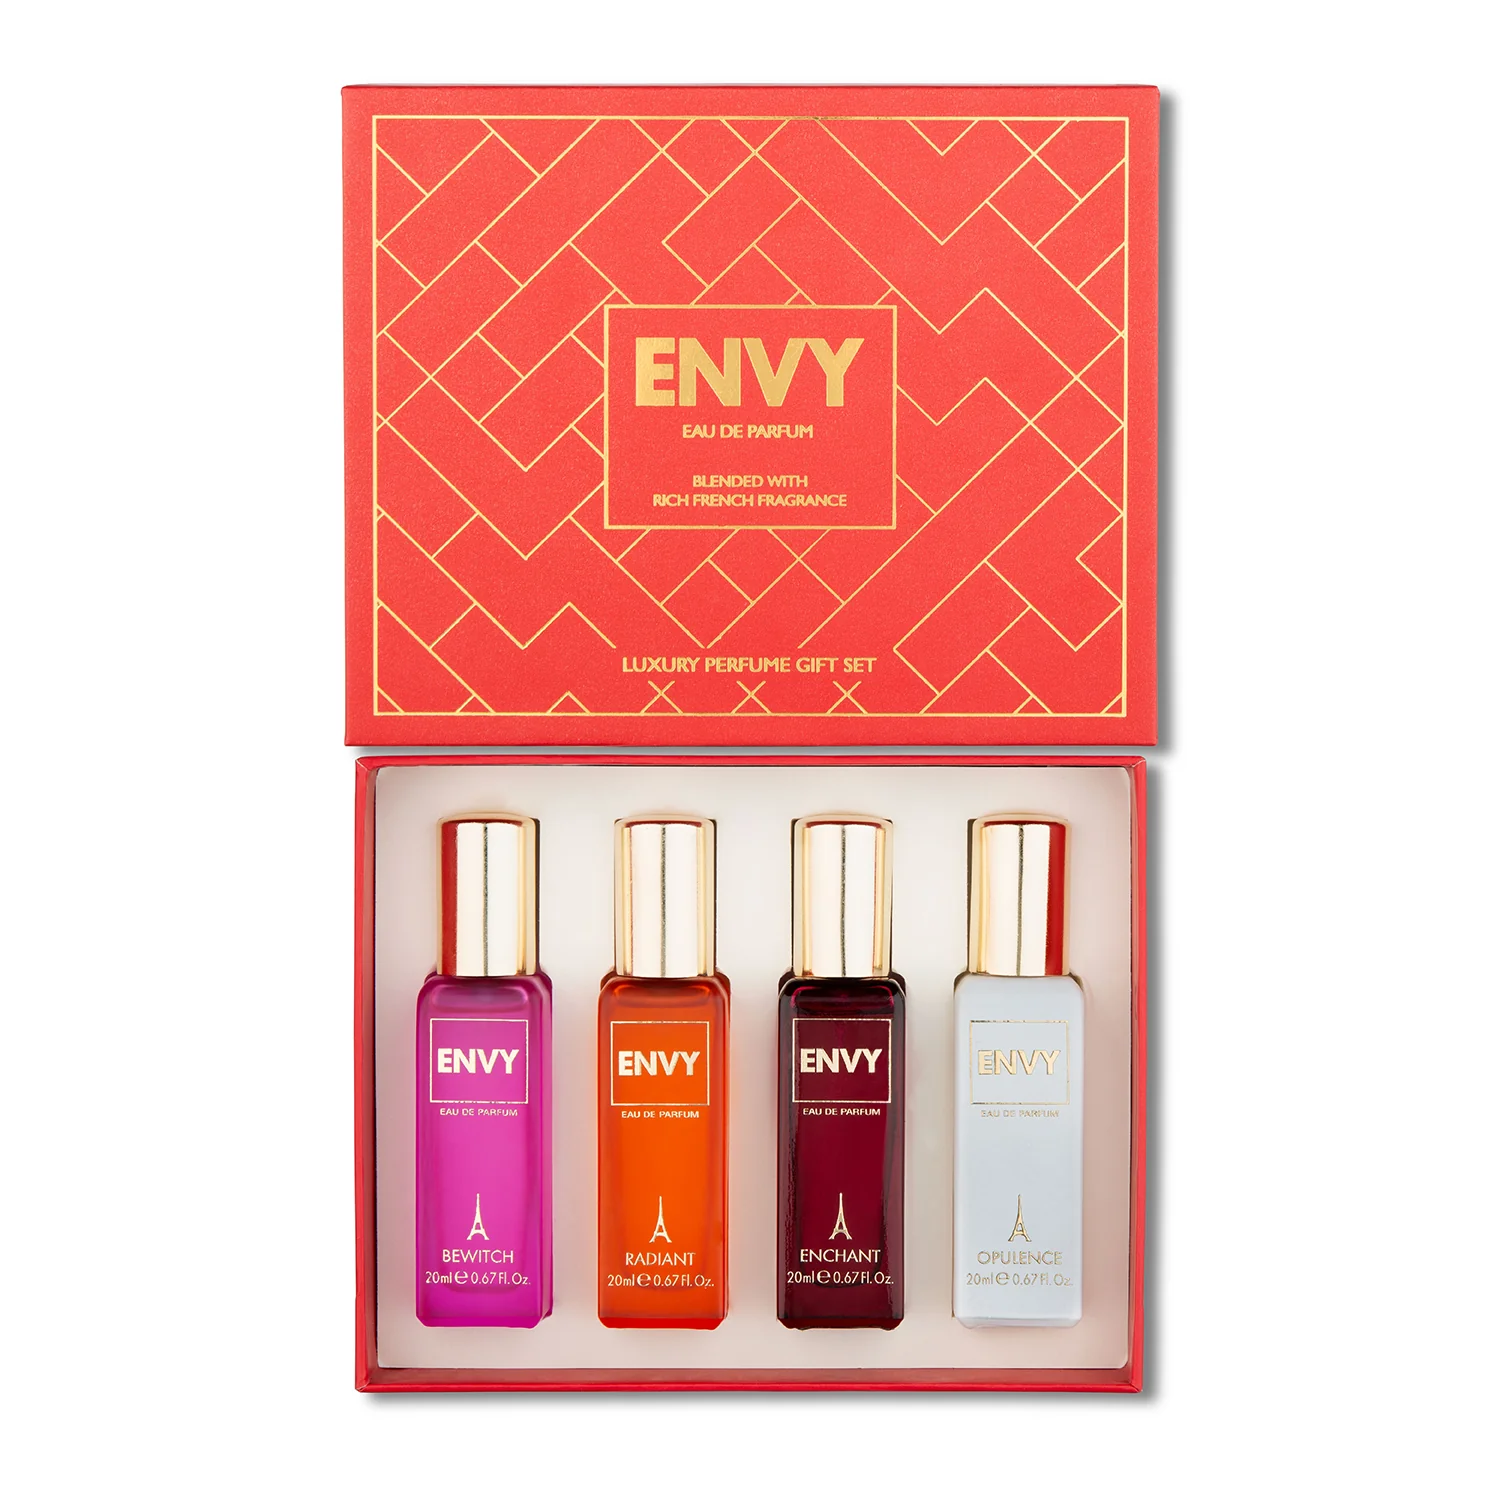 Envy Luxury Perfume Gift Set for Women